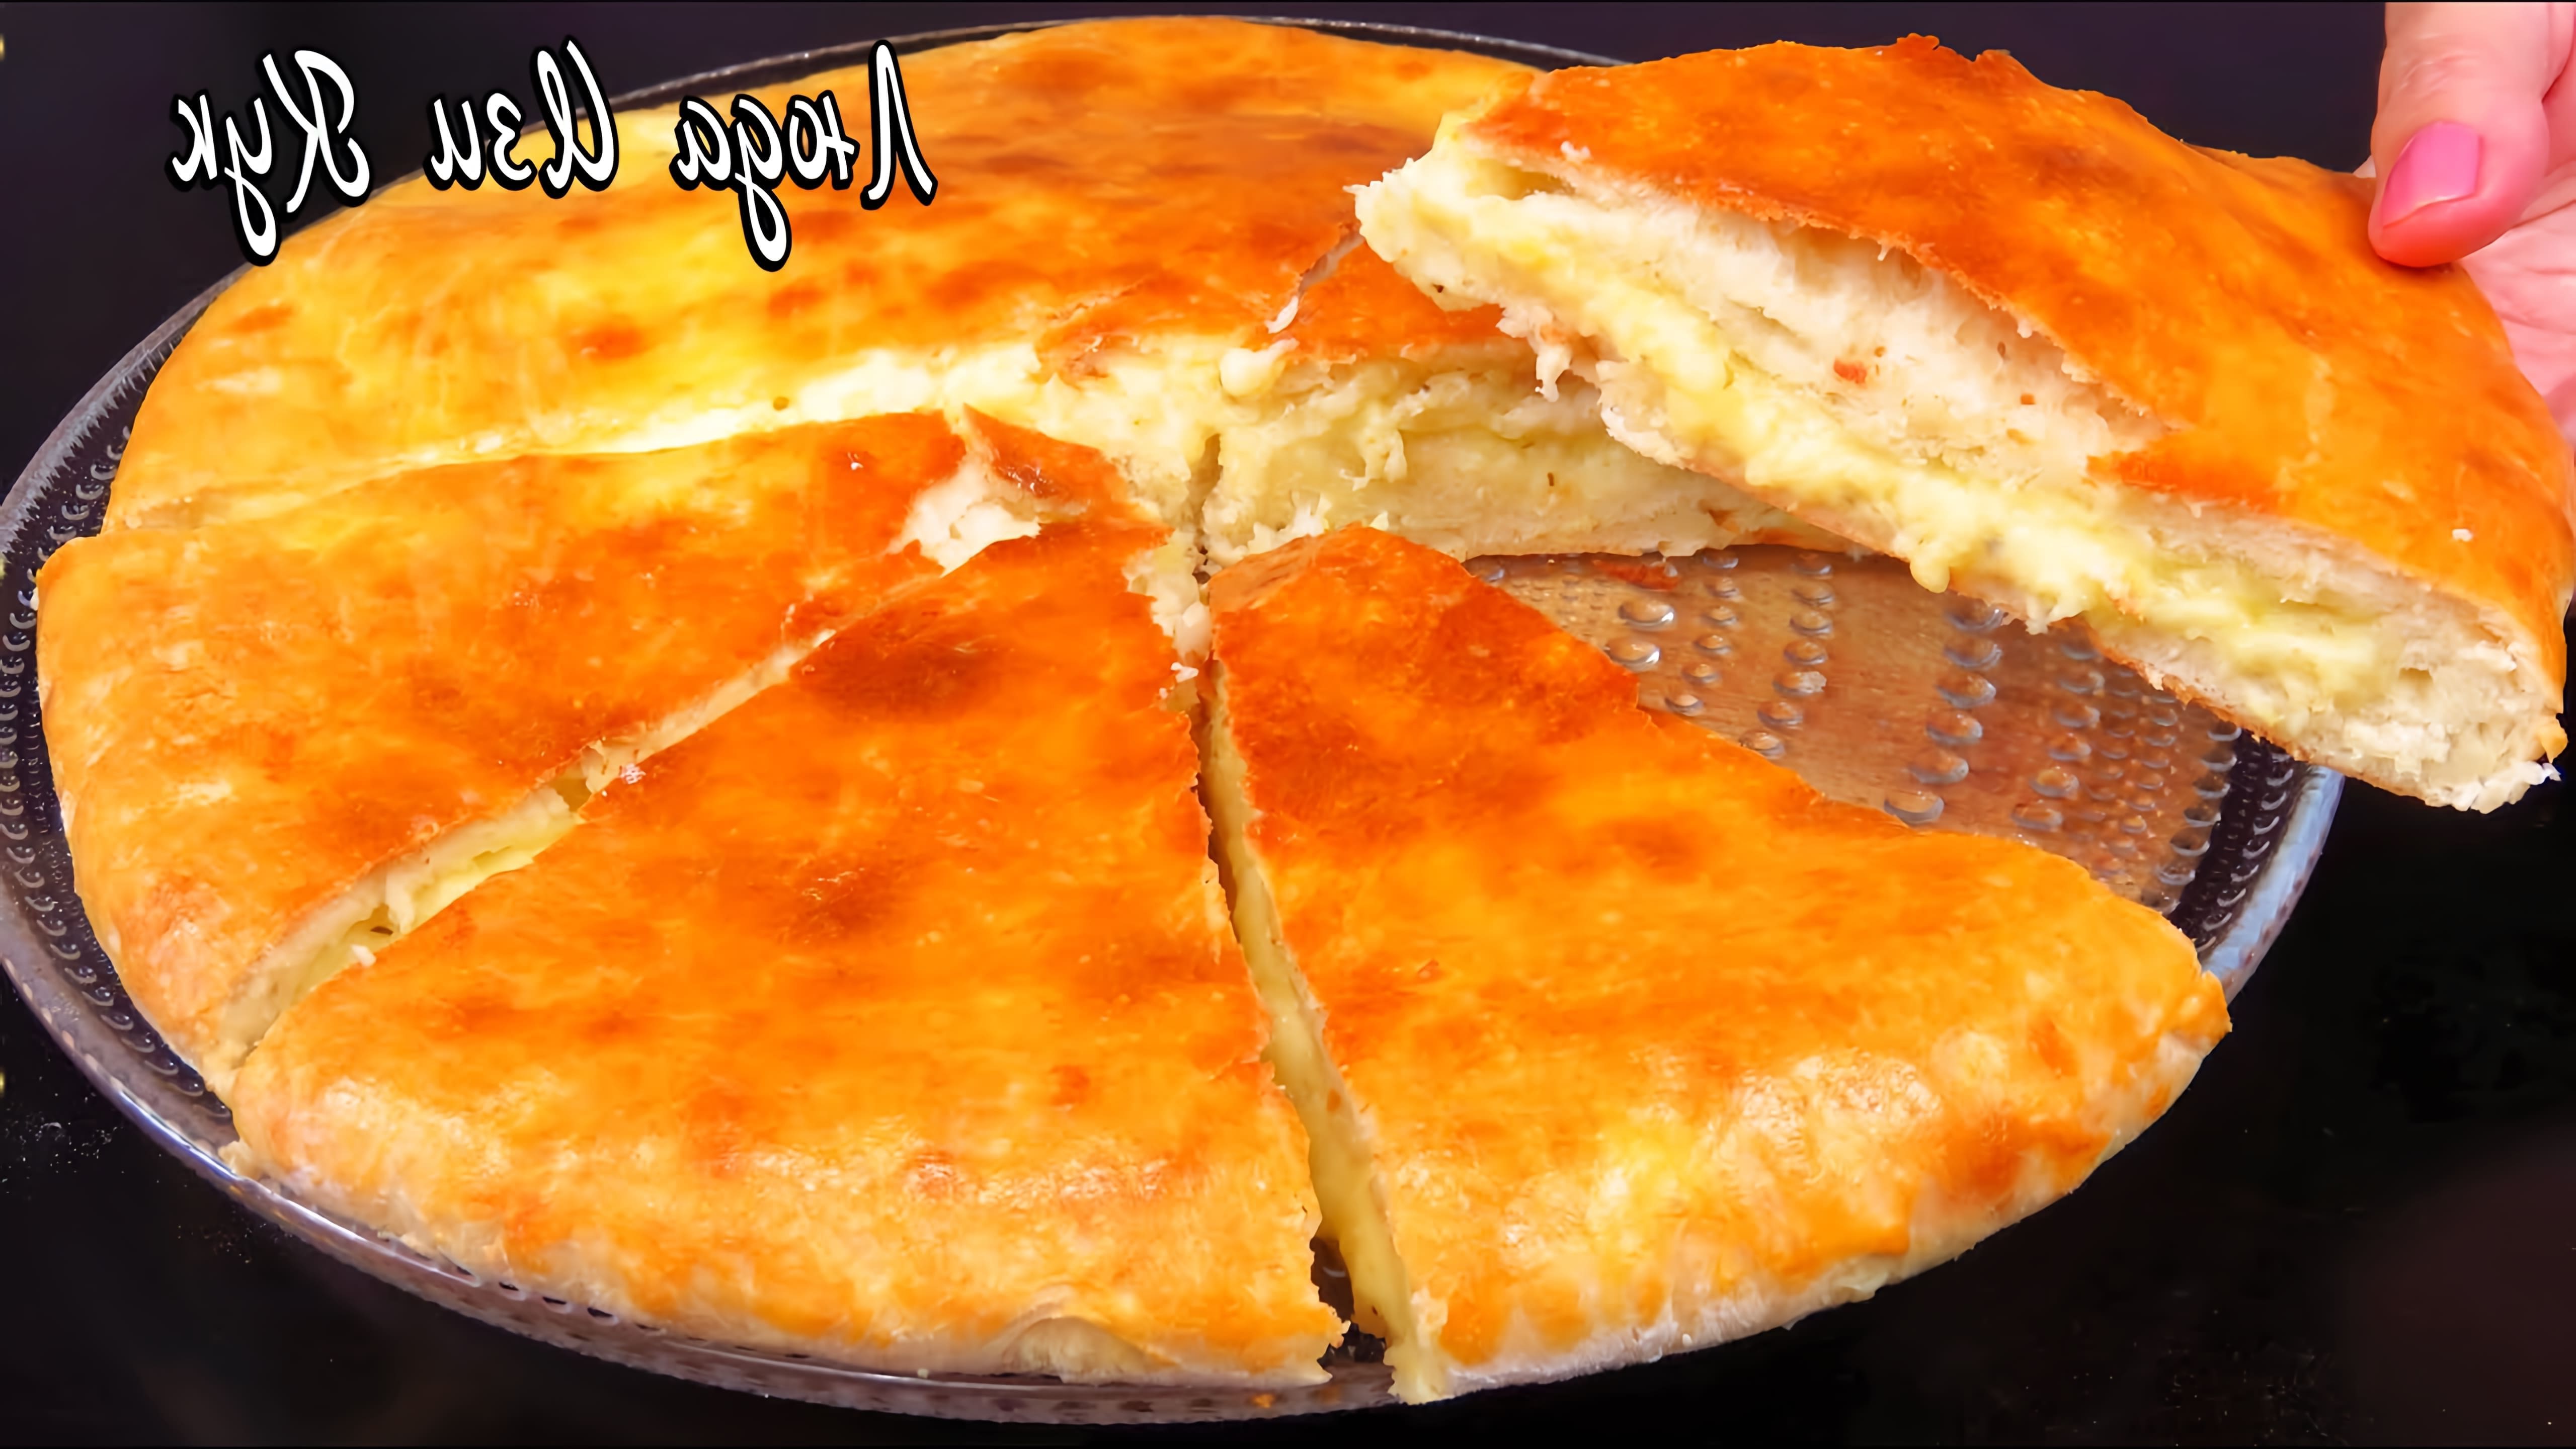 В этом видео демонстрируется рецепт приготовления осетинского пирога с картошкой и сыром